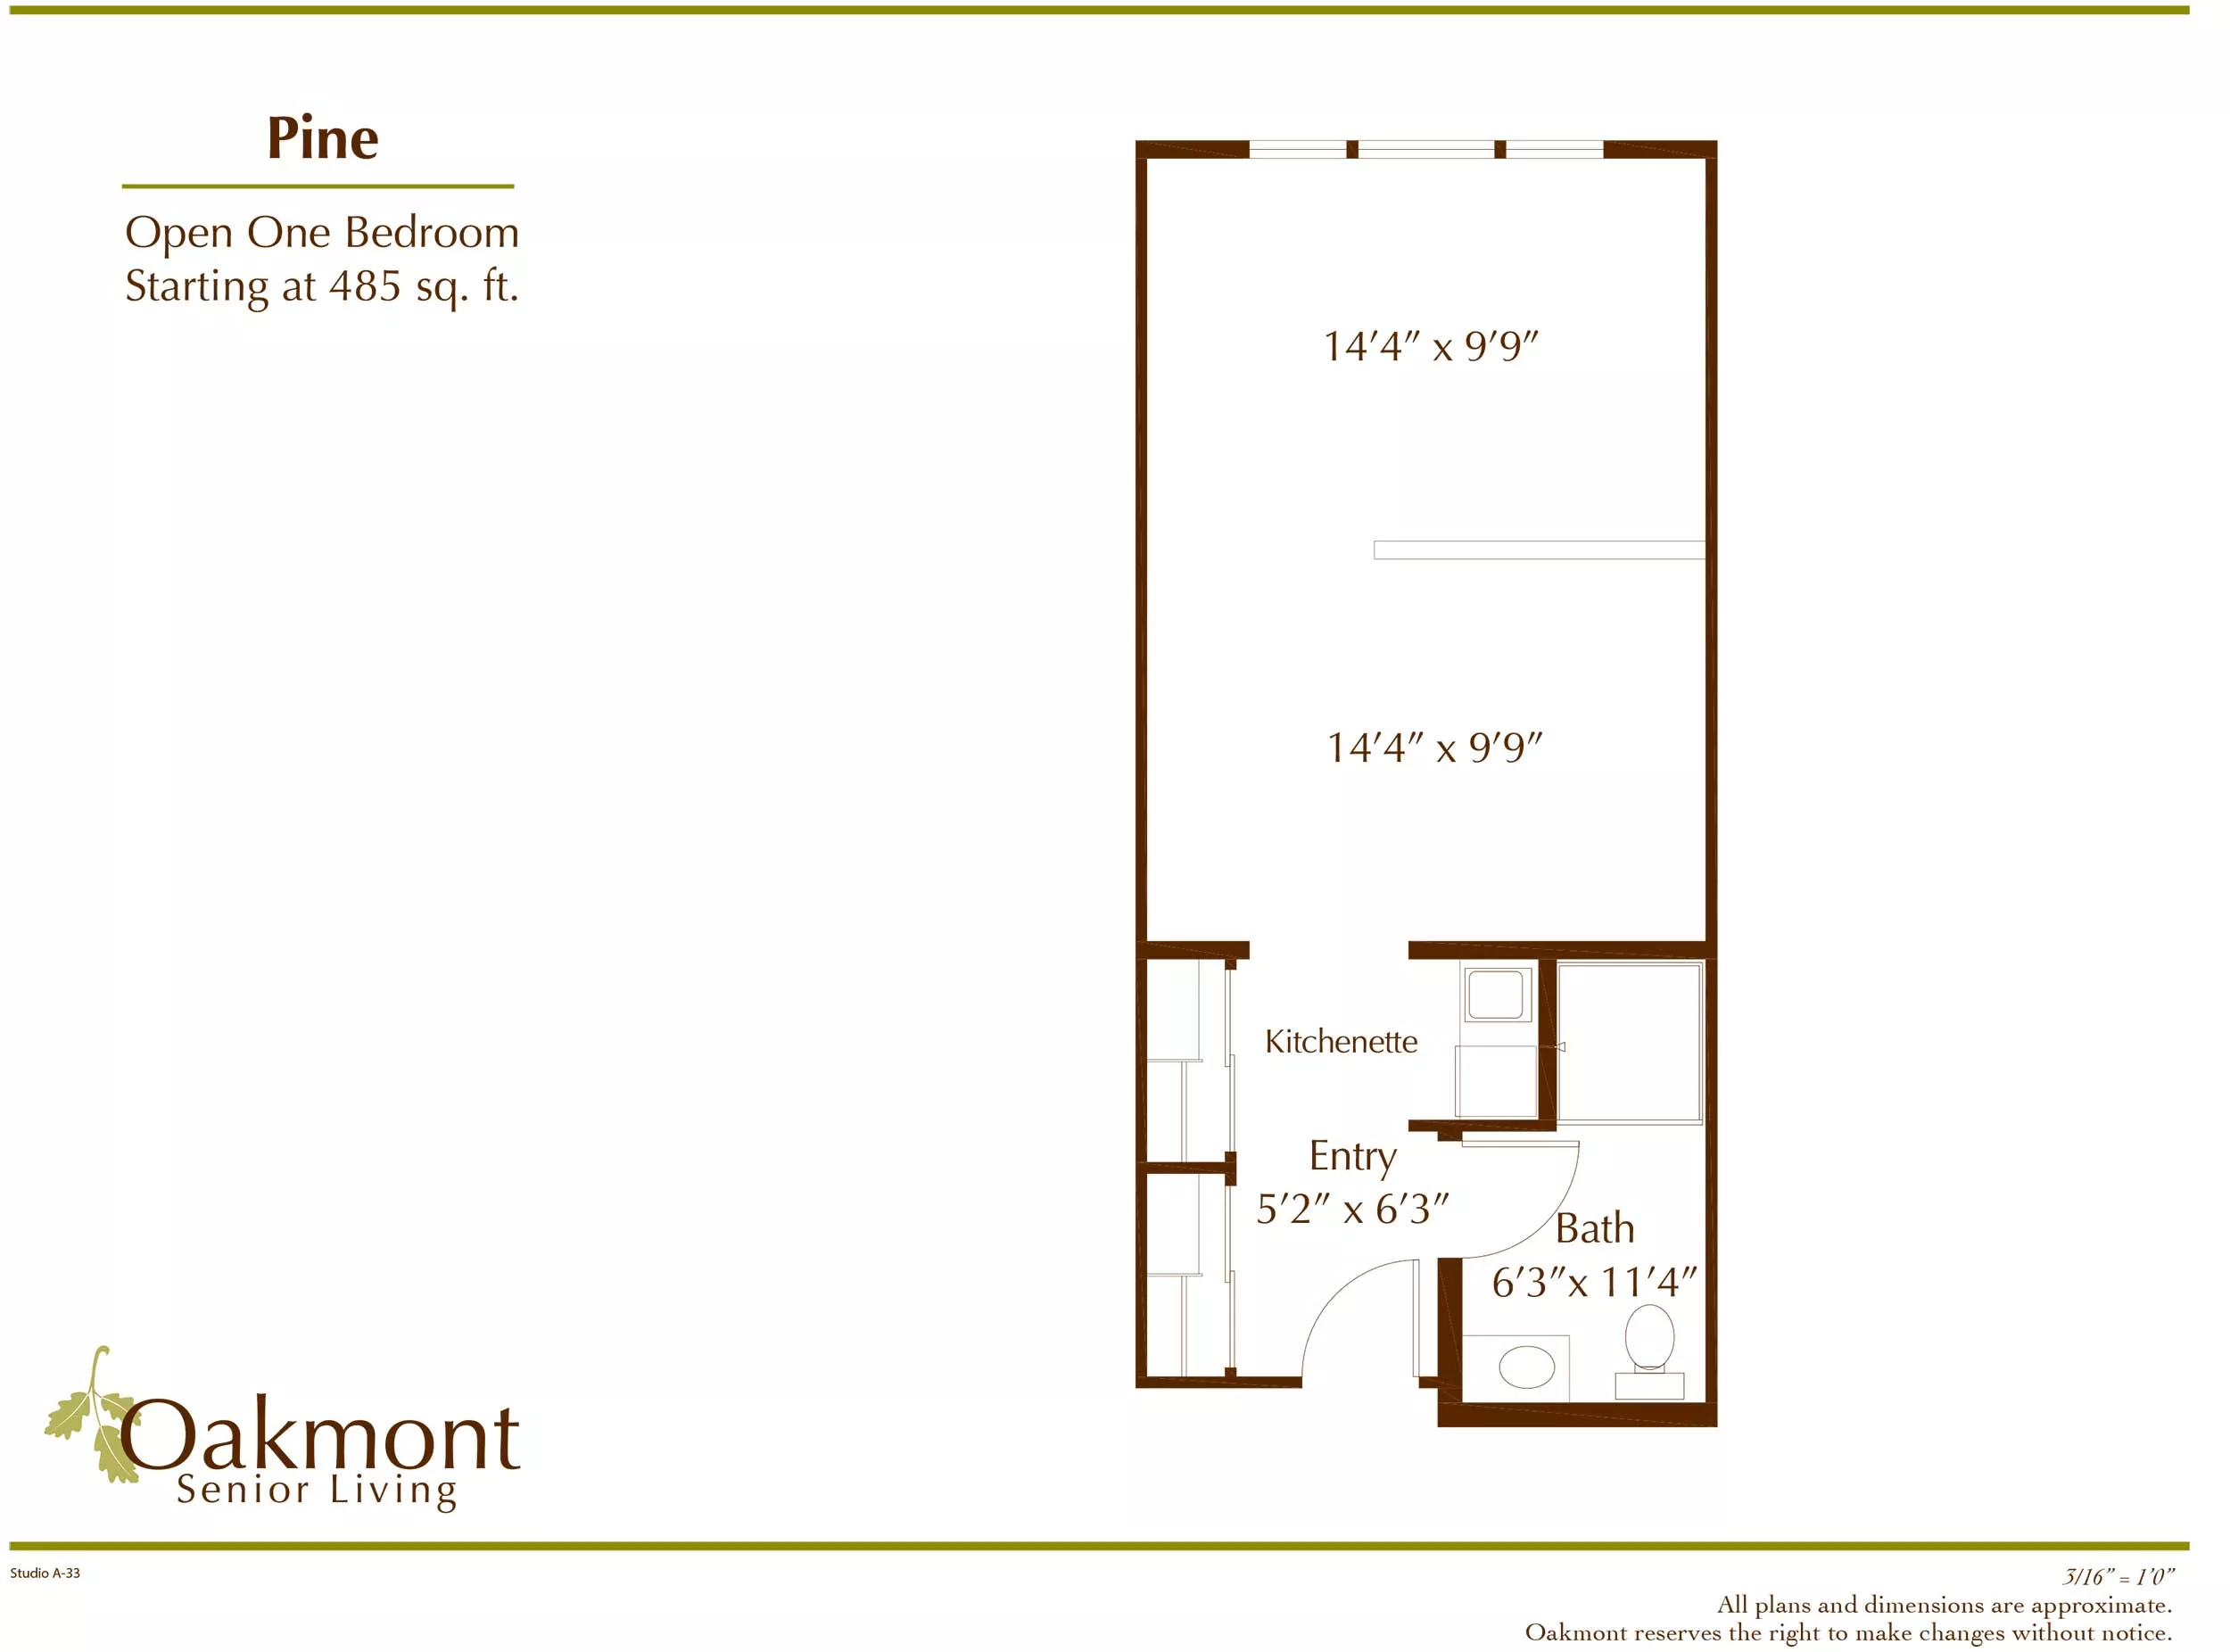 Madrone Studio Suite floor plan